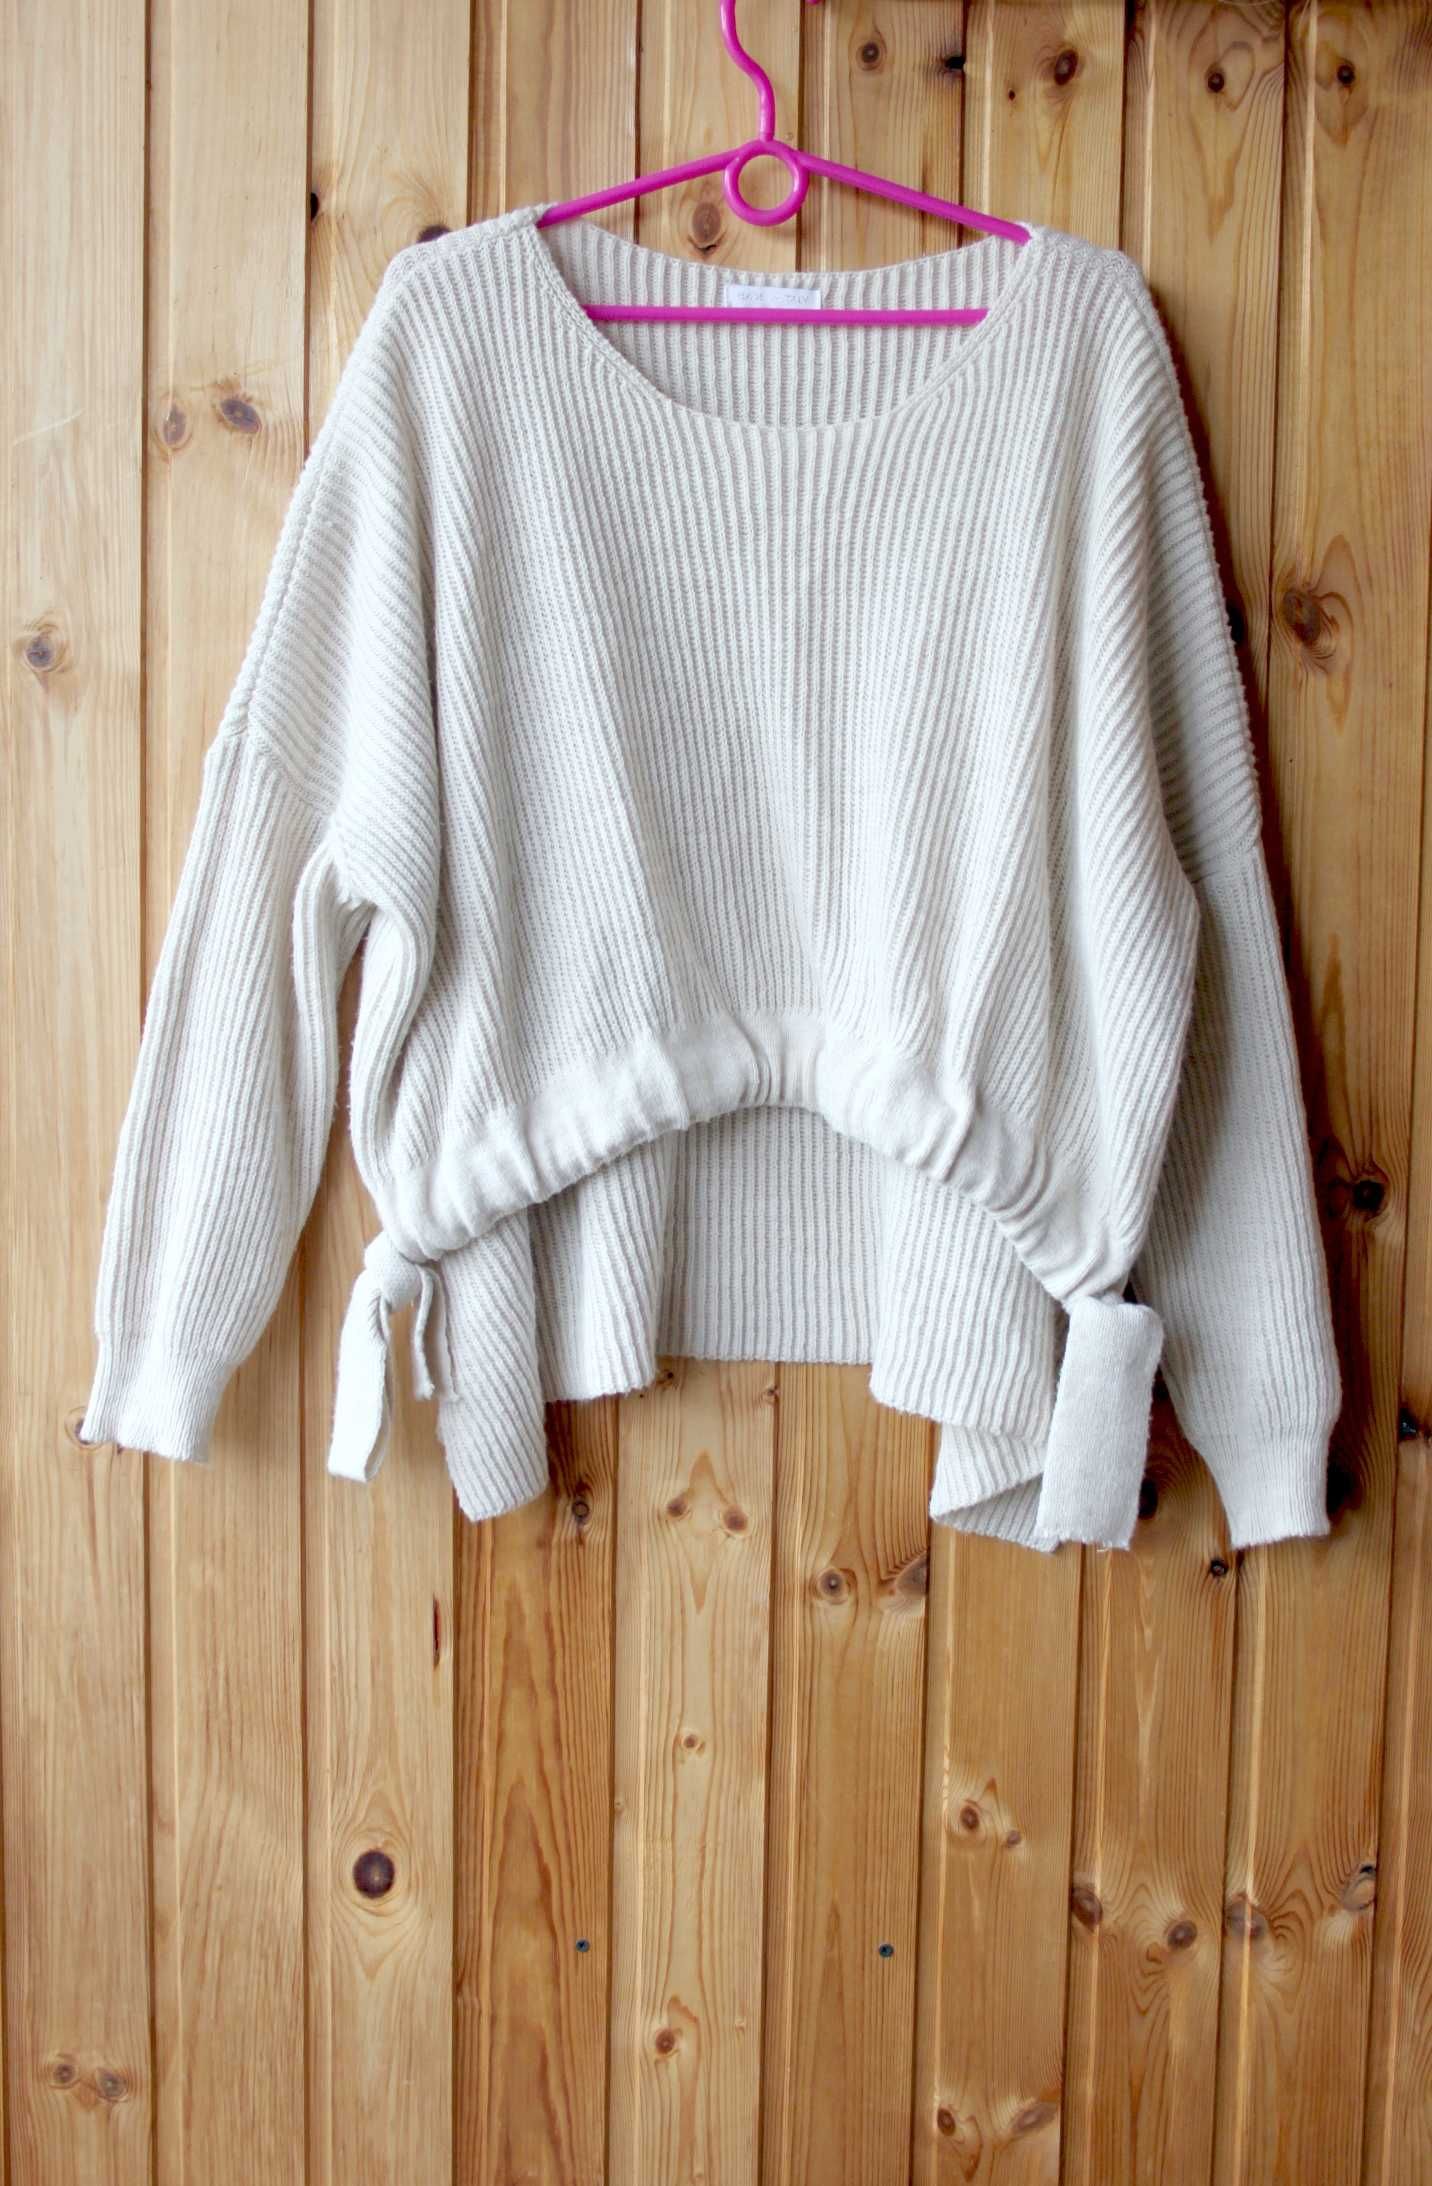 Женский джемпер свитер пуловер 48 размер